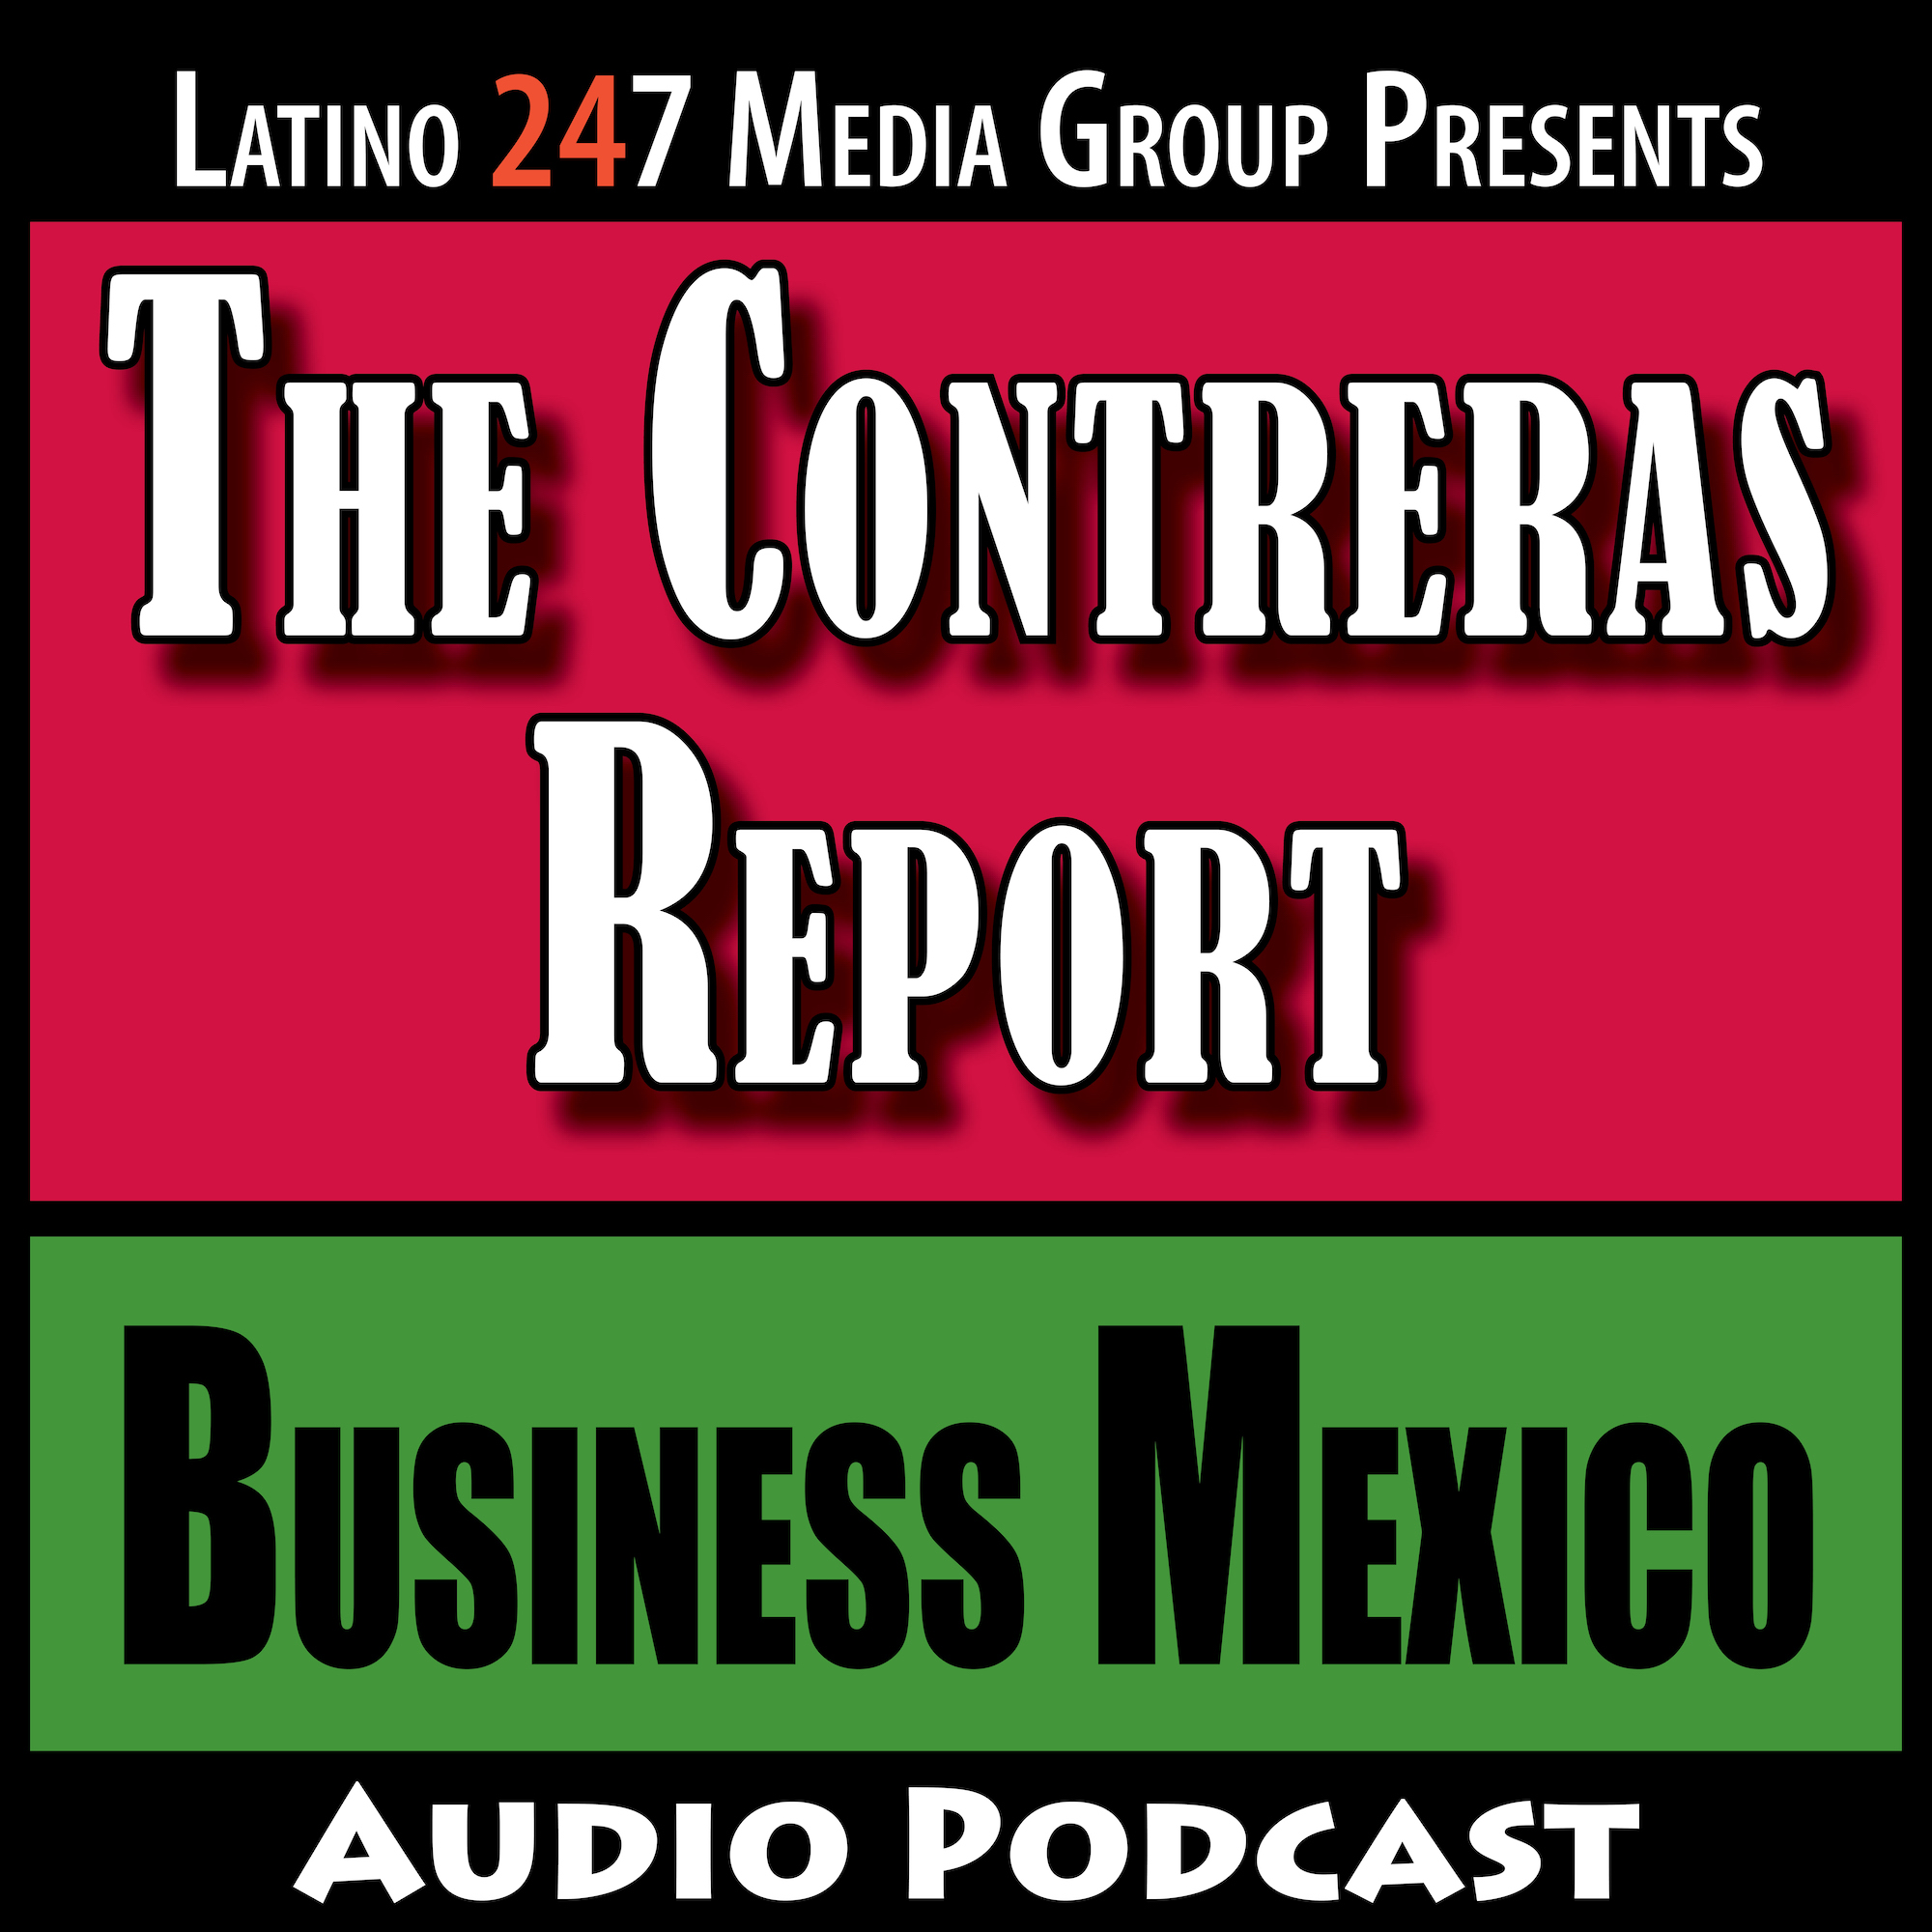 The Contreras Report: Business México